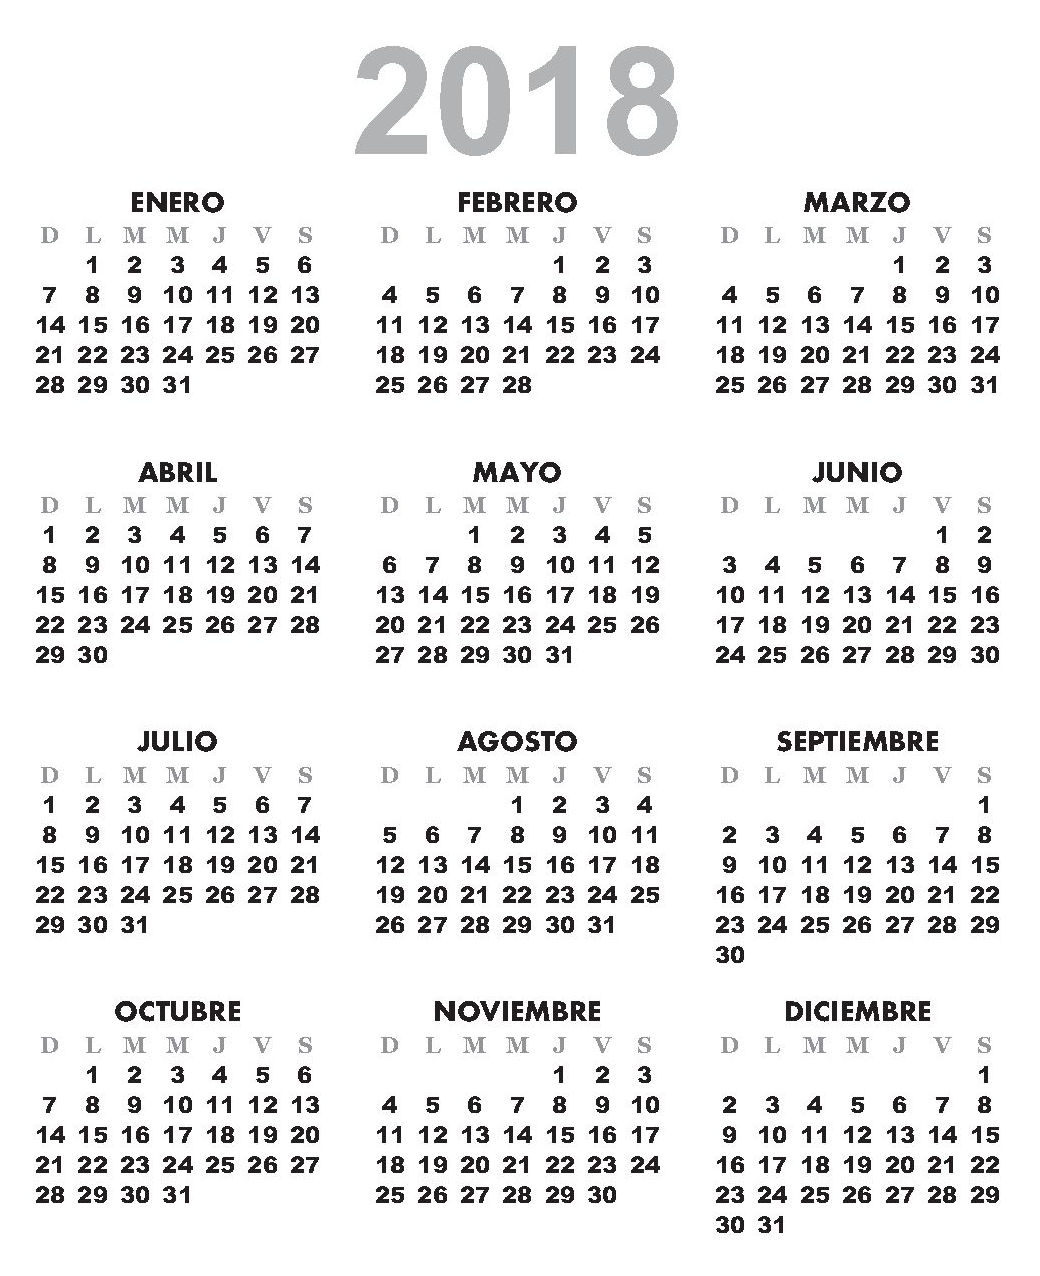 Calendario lunar 2020: corte de pelo, siembra y depilaci n